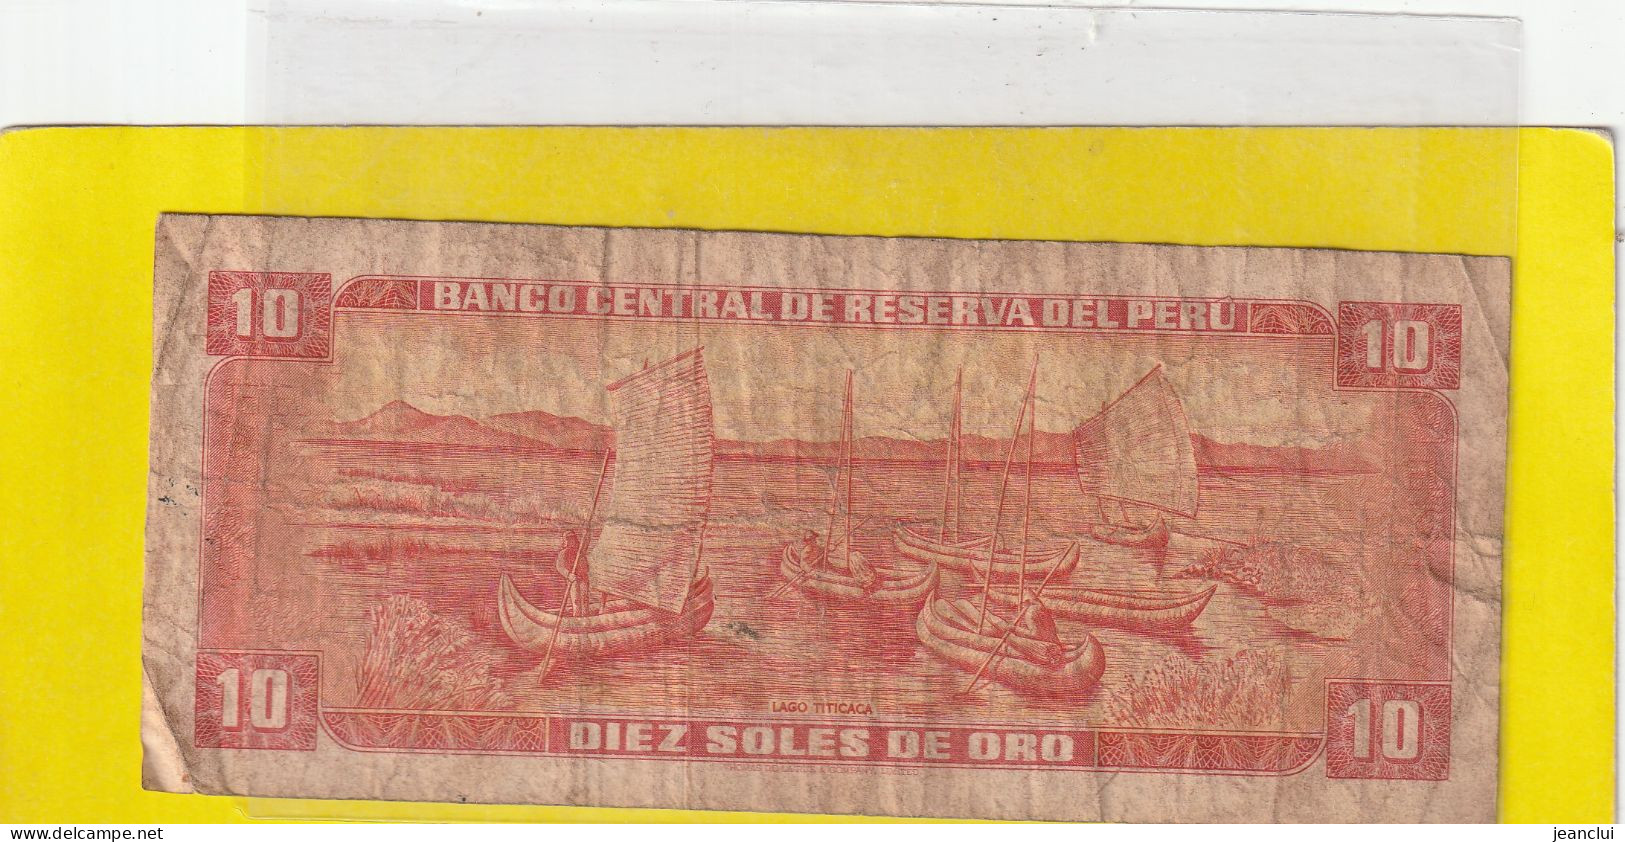 BANCO CENTRAL DE RESERVA DEL PERU .  10 SOLES DE ORO  .  24 DE MAYO DE 1973  . N°  I 343080 .  2 SCANNES  .  ETAT USITE - Peru